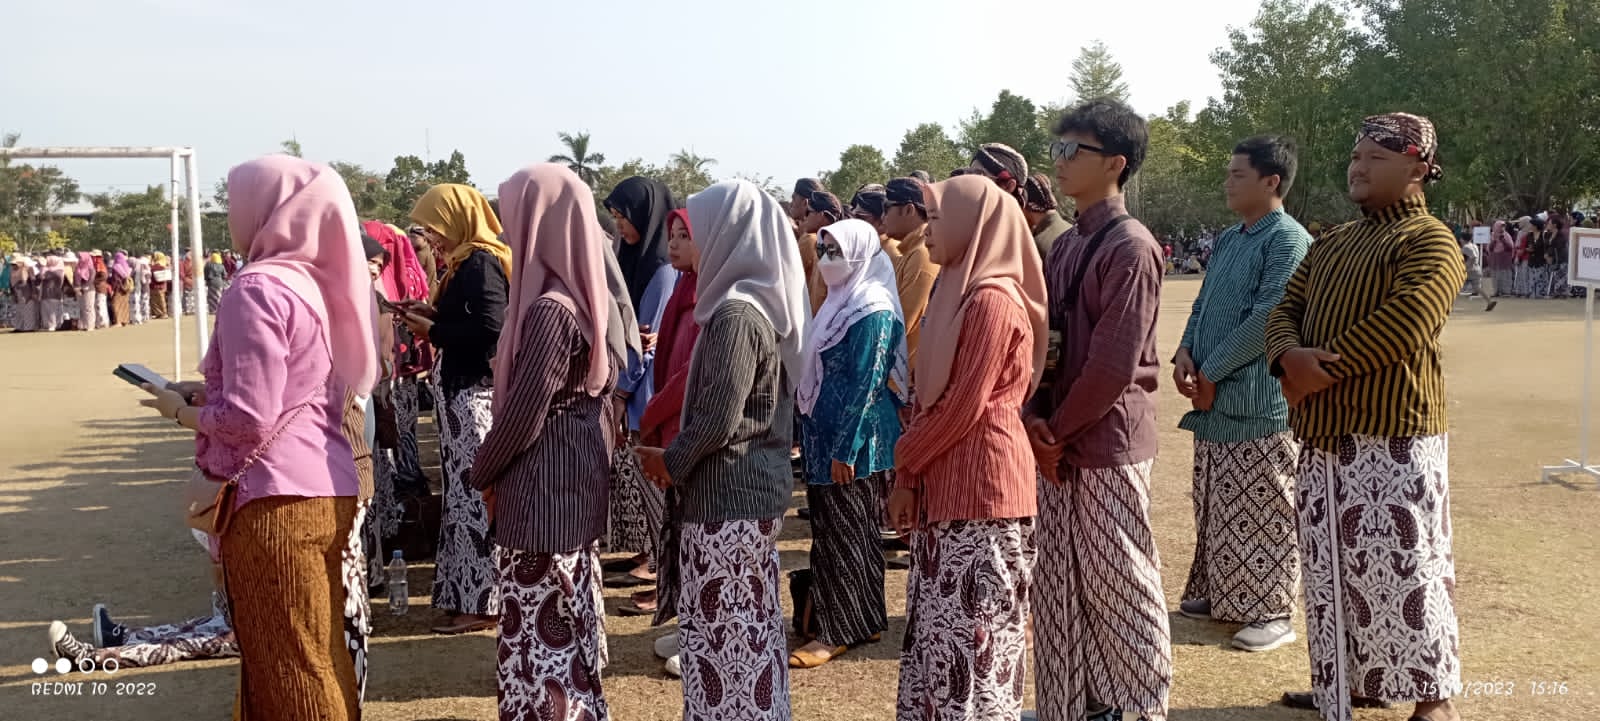 Peringatan Hari Jadi Kabupaten Kulon Progo di Alun Alun Wates